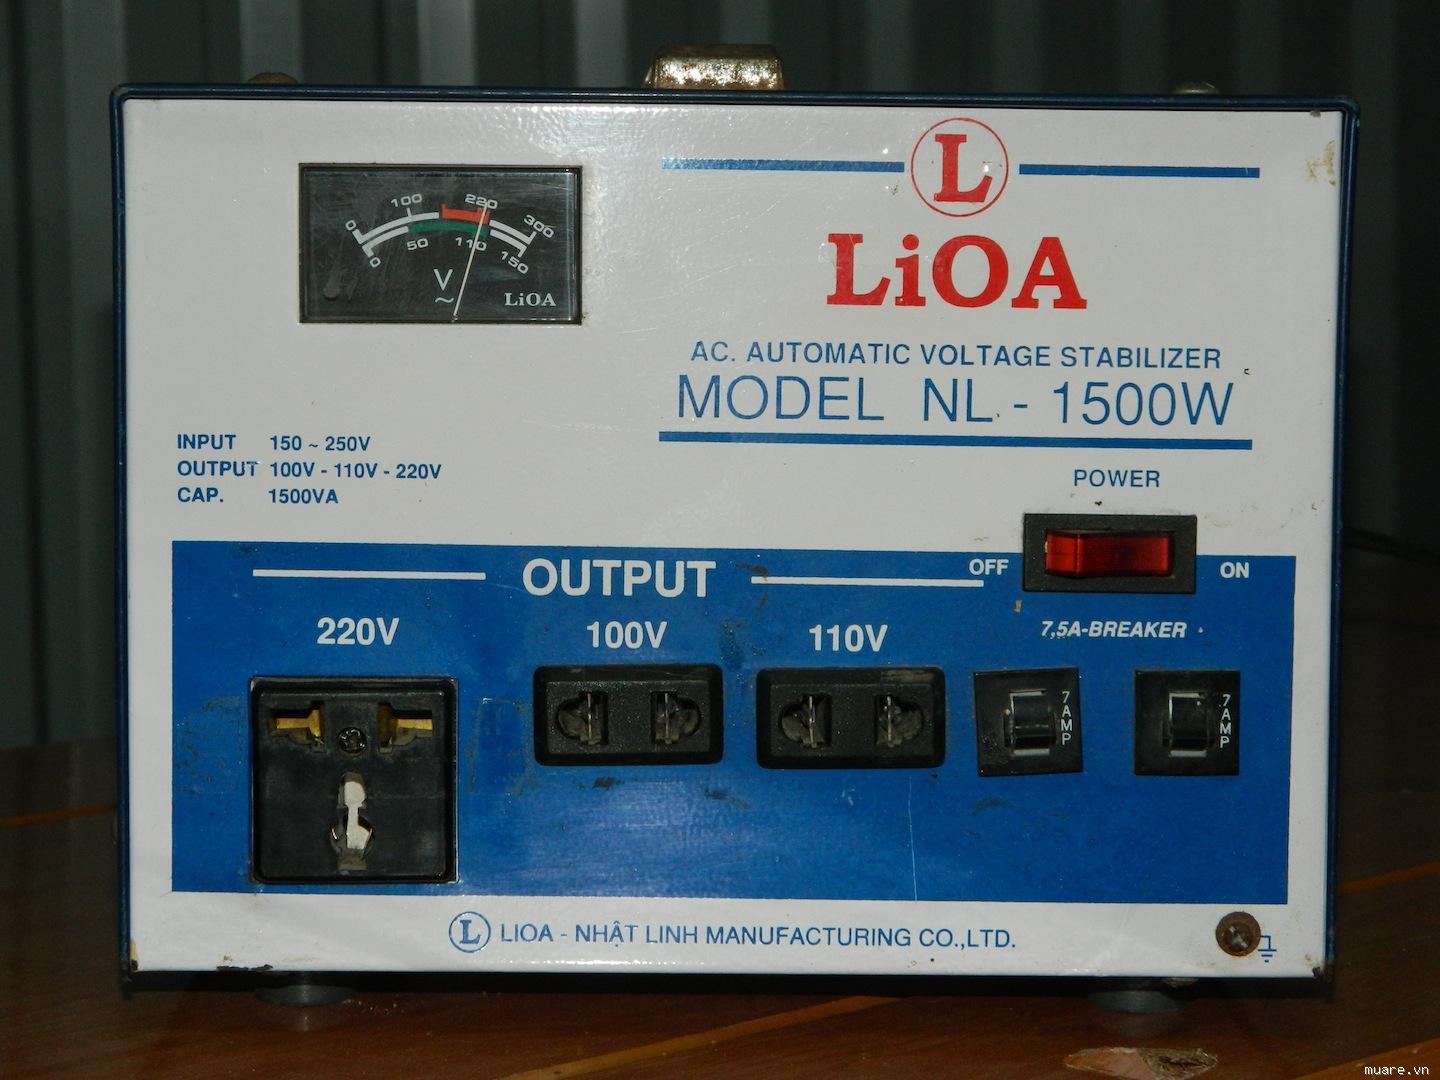 Tuổi thọ của thiết bị ổn áp Lioa không dưới 10 năm.